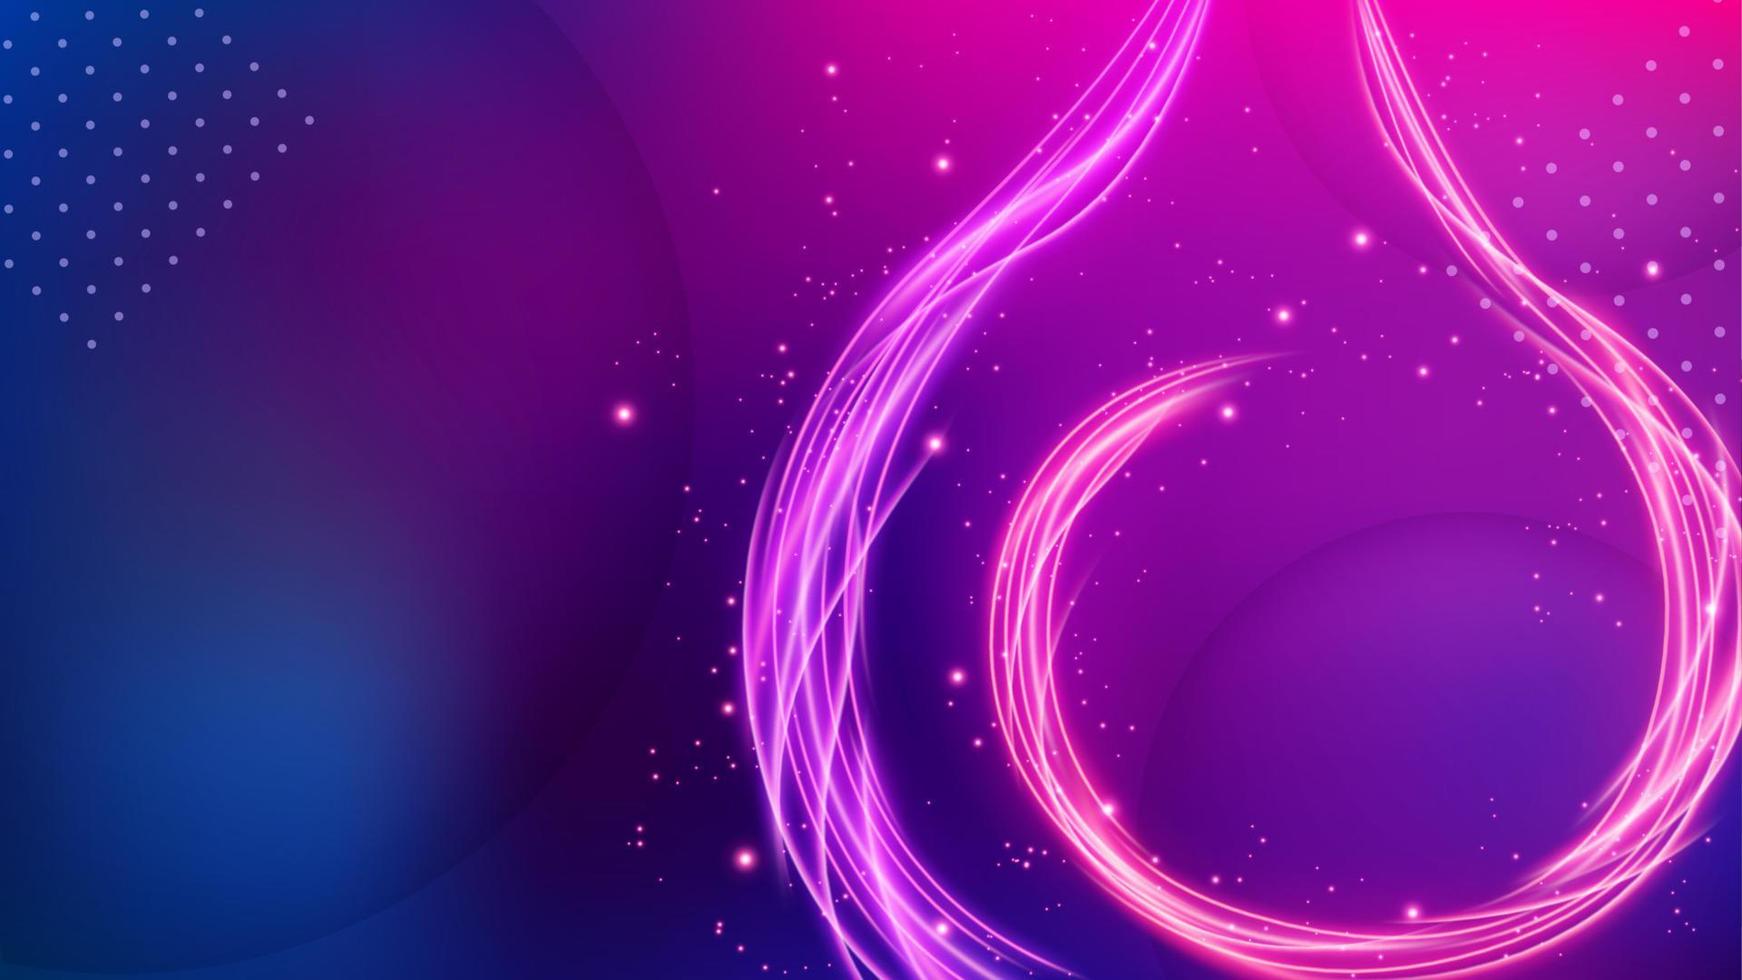 Fire Lines Background, Elegant Violet Line. Widescreen Vector Illustration